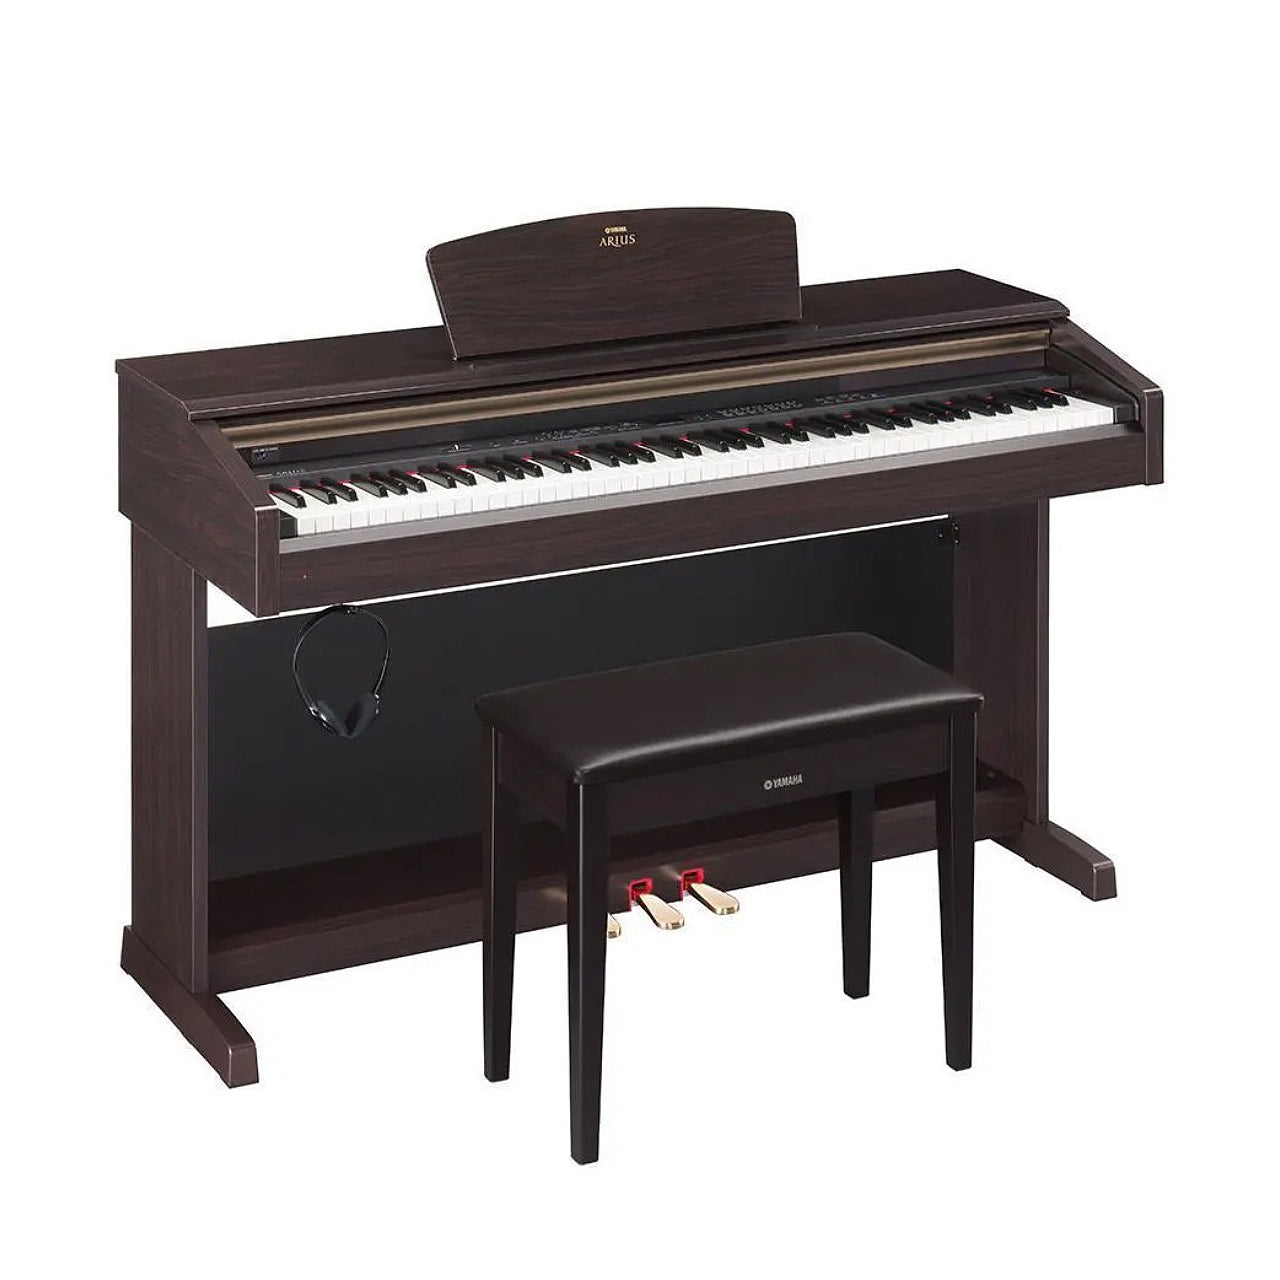 Piano Yamaha ARIUS Series Tiêu Chuẩn (Used)